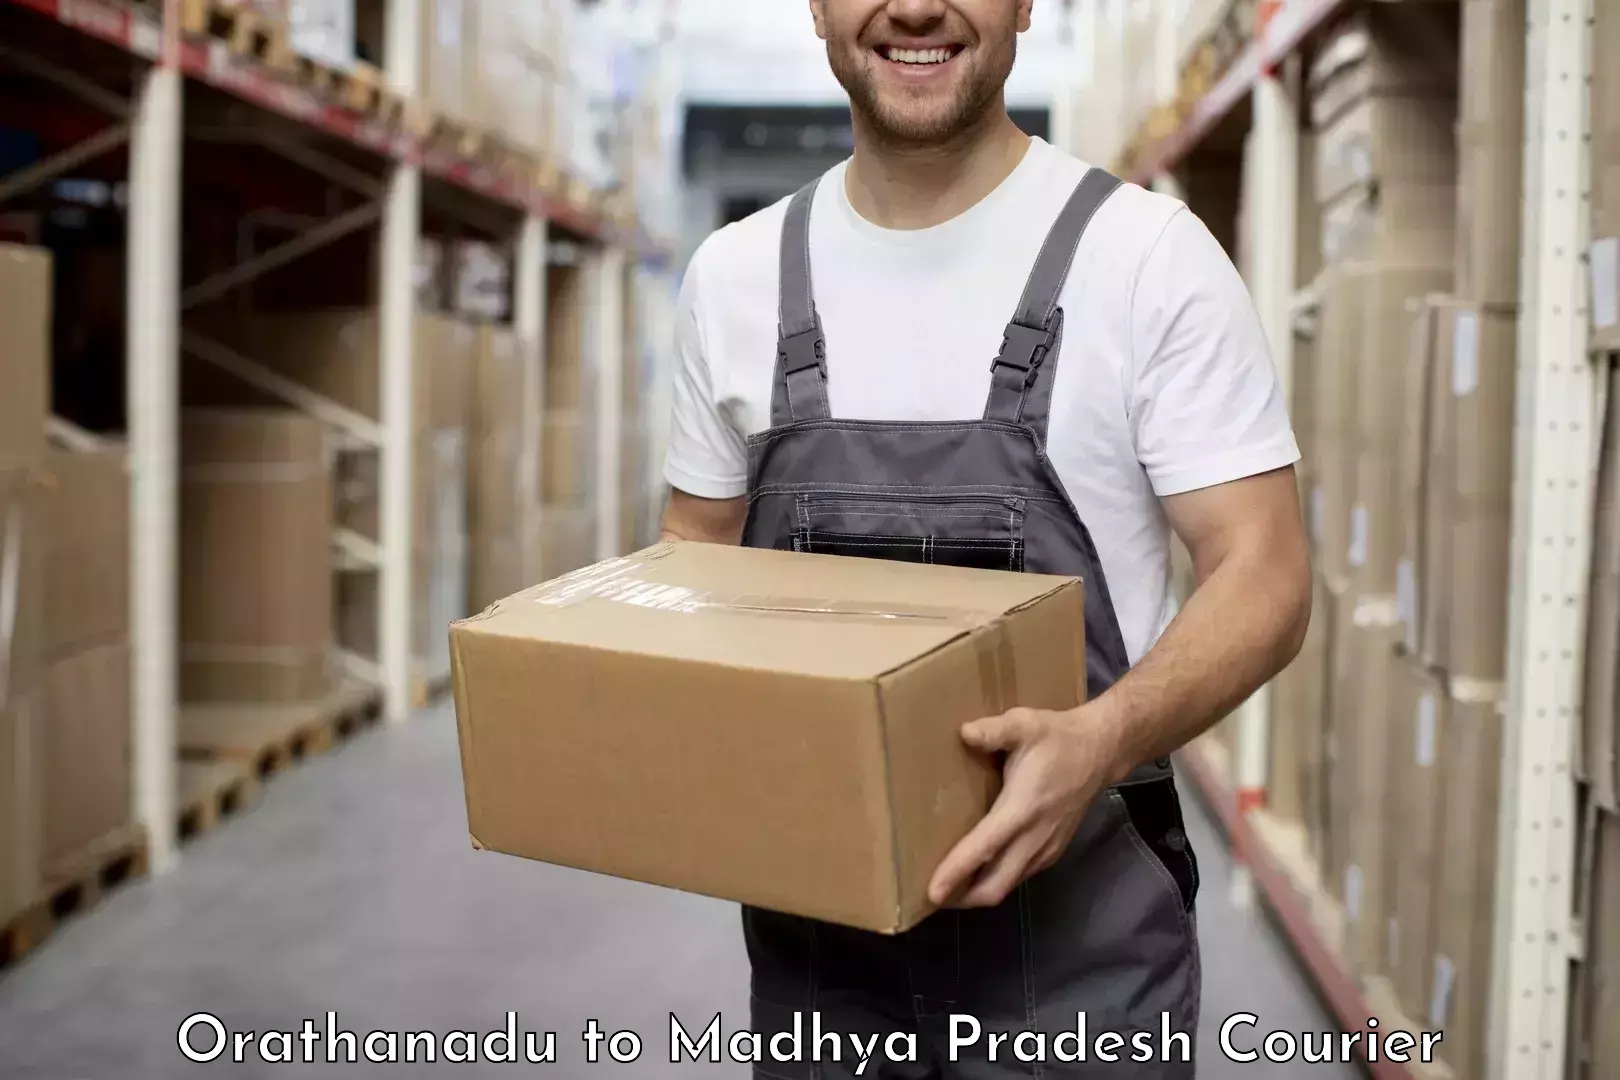 User-friendly delivery service Orathanadu to Madhya Pradesh